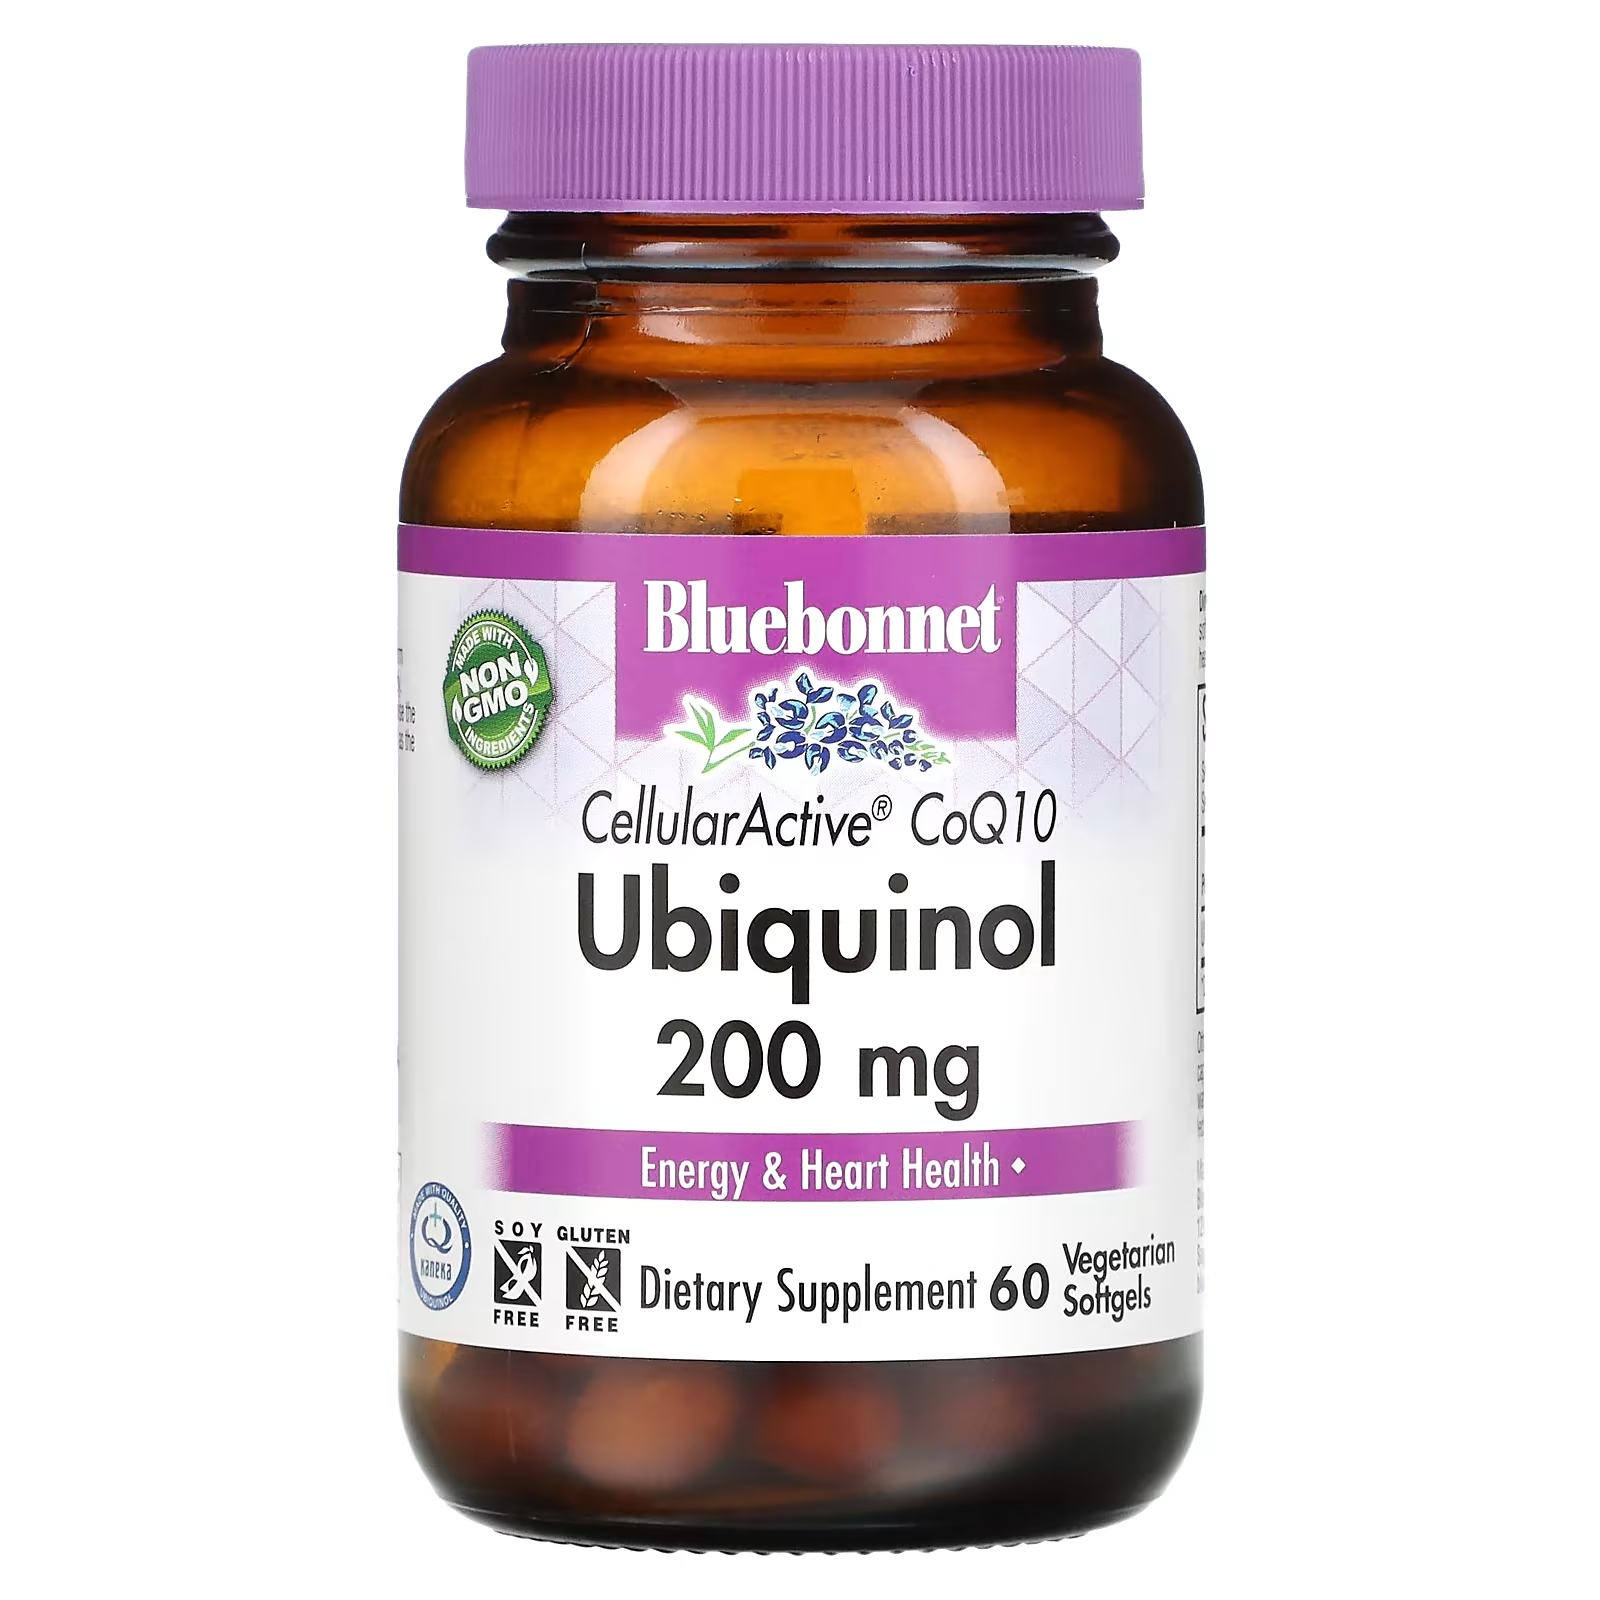 Bluebonnet Nutrition Убихинол CellullarActive CoQ10 200 мг, 60 растительных капсул bluebonnet nutrition cellularactive coq10 ubiquinol 100 мг 60 вегетарианских капсул